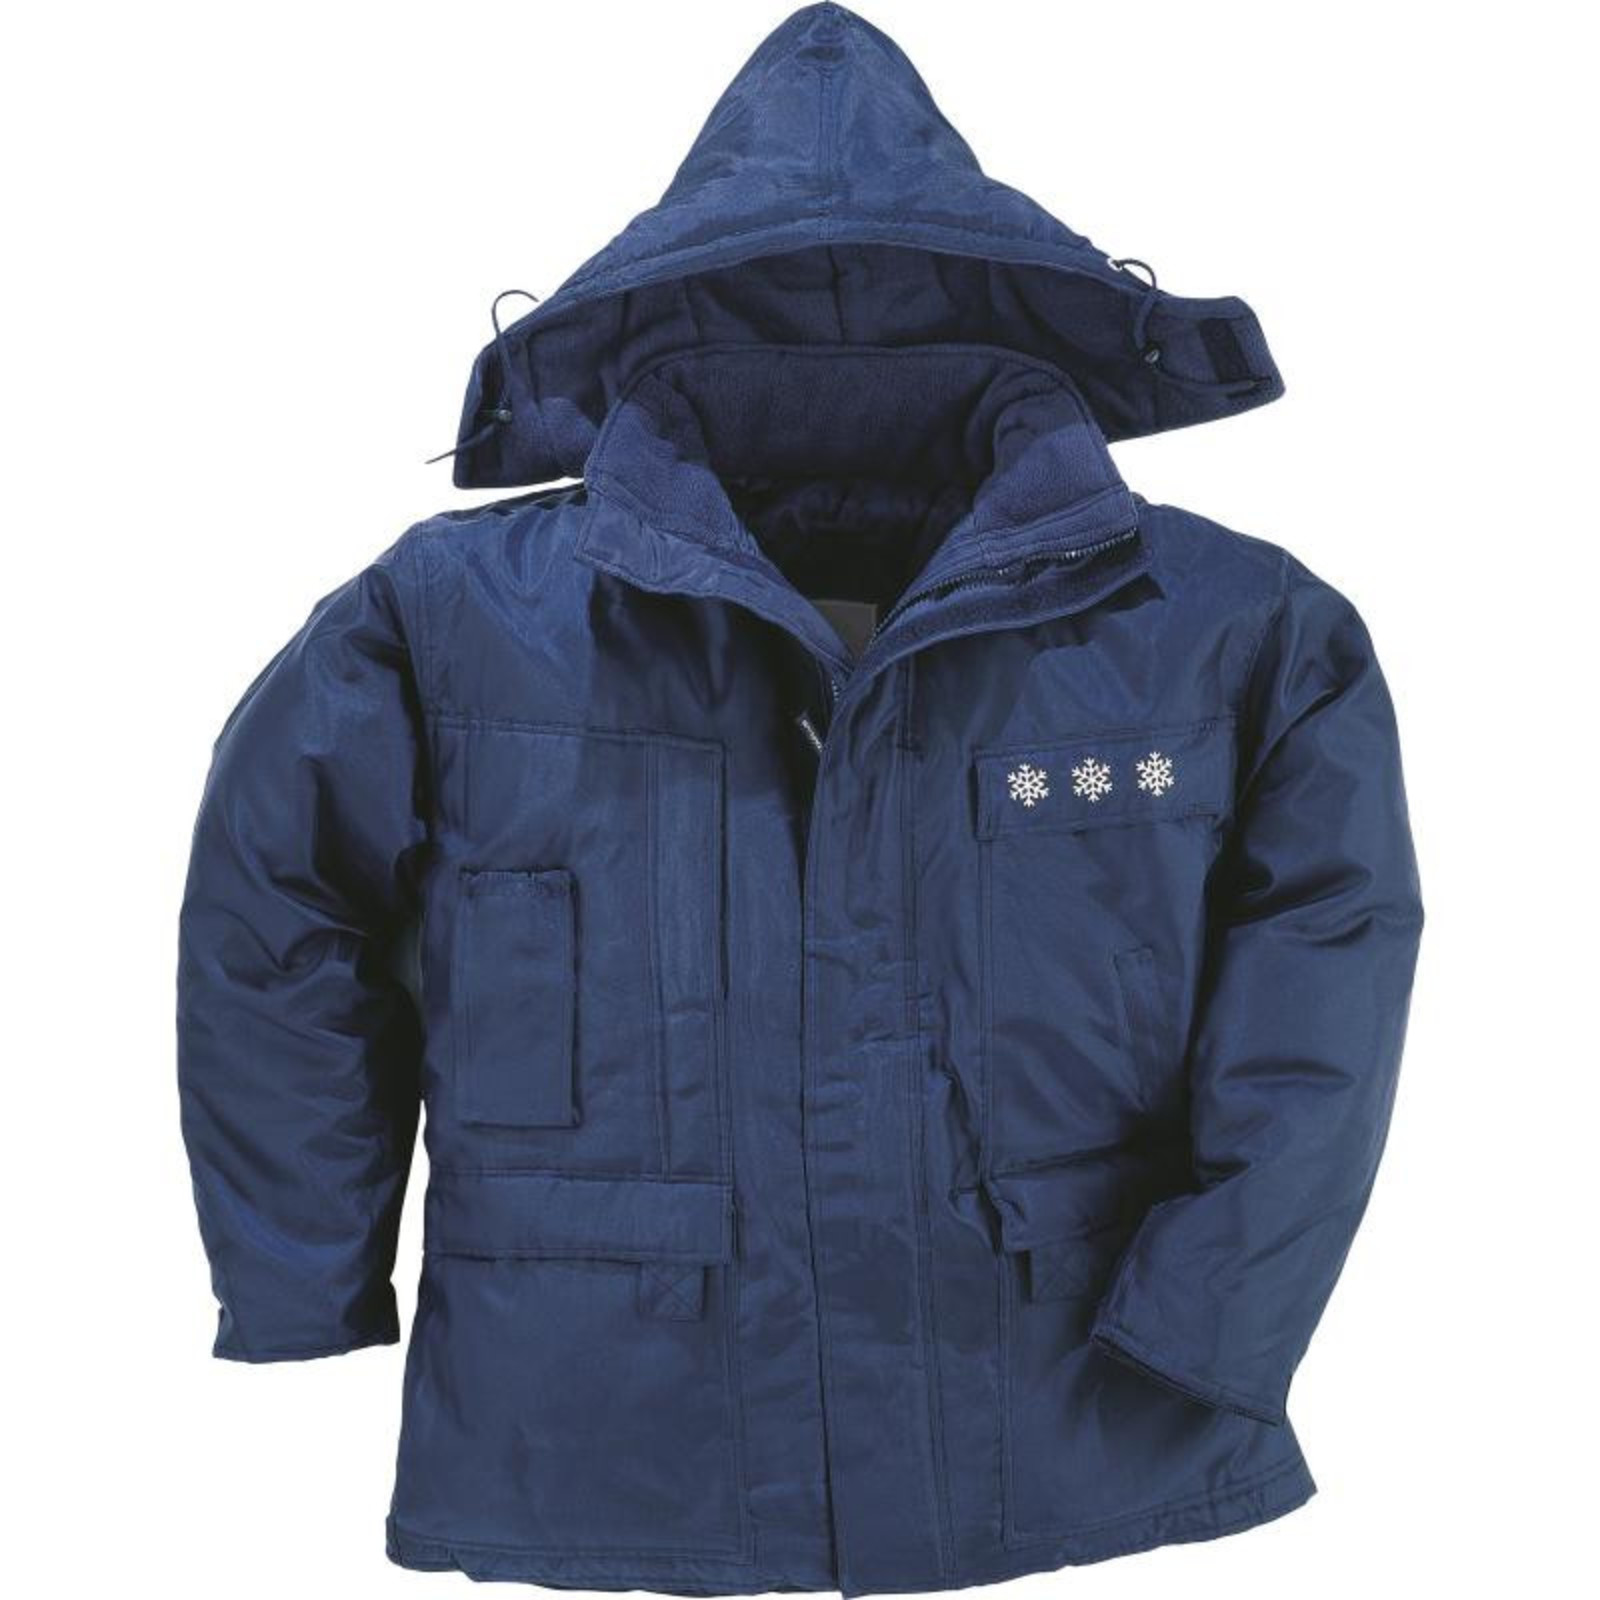 Pracovná bunda do extrémnej zimy Laponie2 - veľkosť: M, farba: námornícka modrá